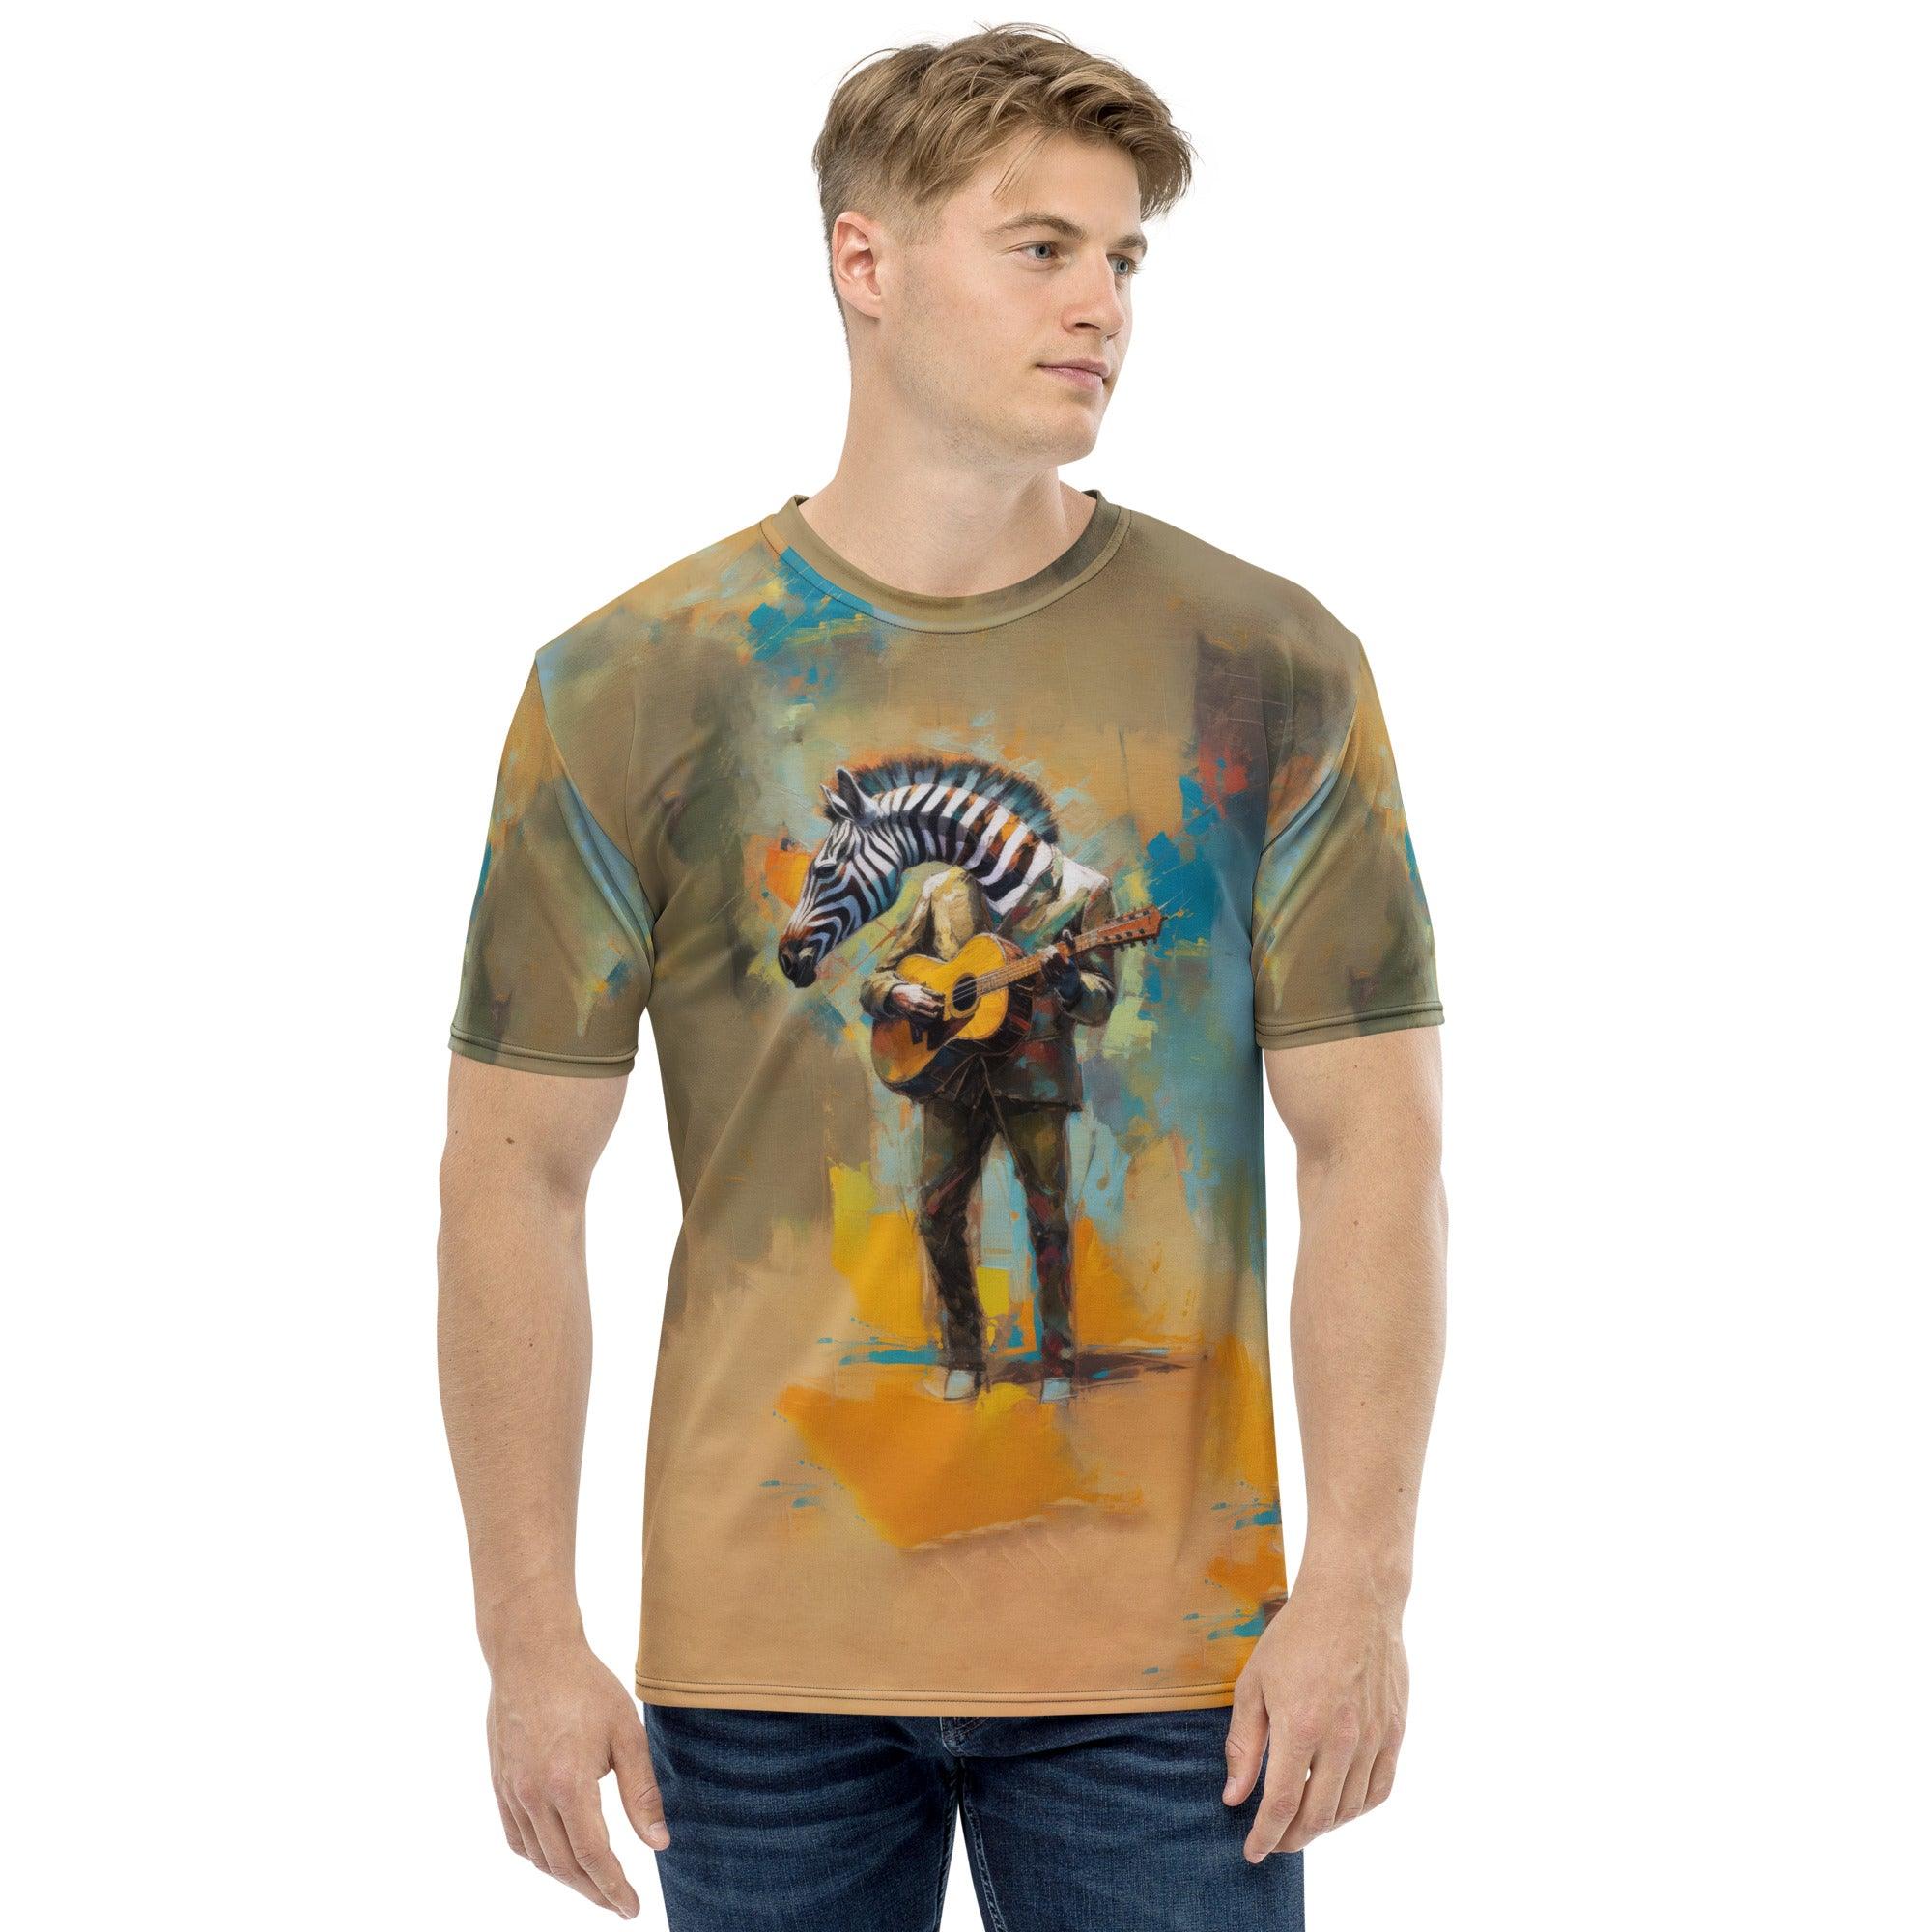 Strumming Symphony Men's T-Shirt - Beyond T-shirts